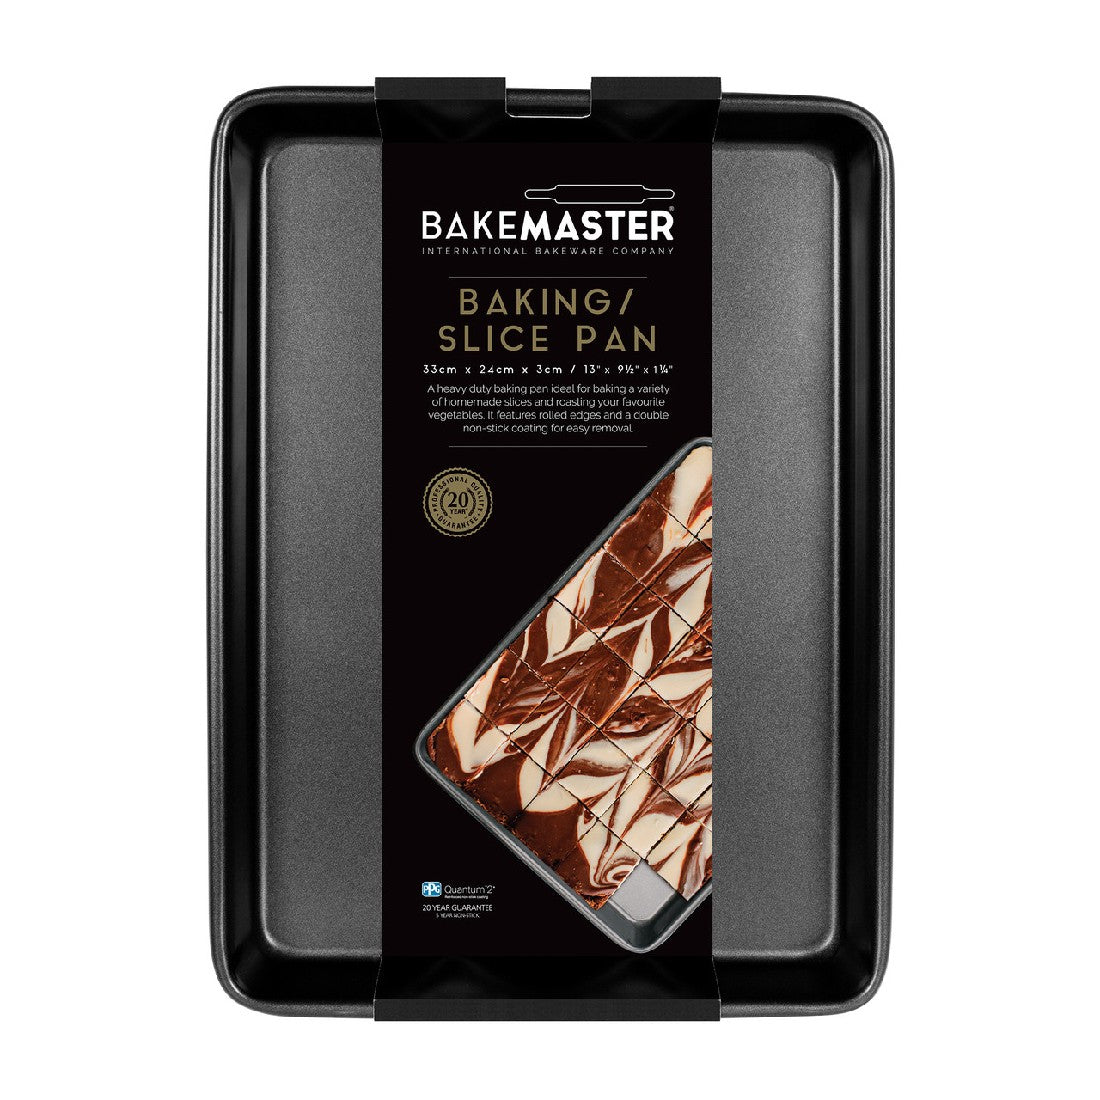 Bakemaster Baking/slice Pan 33 X 24 X 3cm